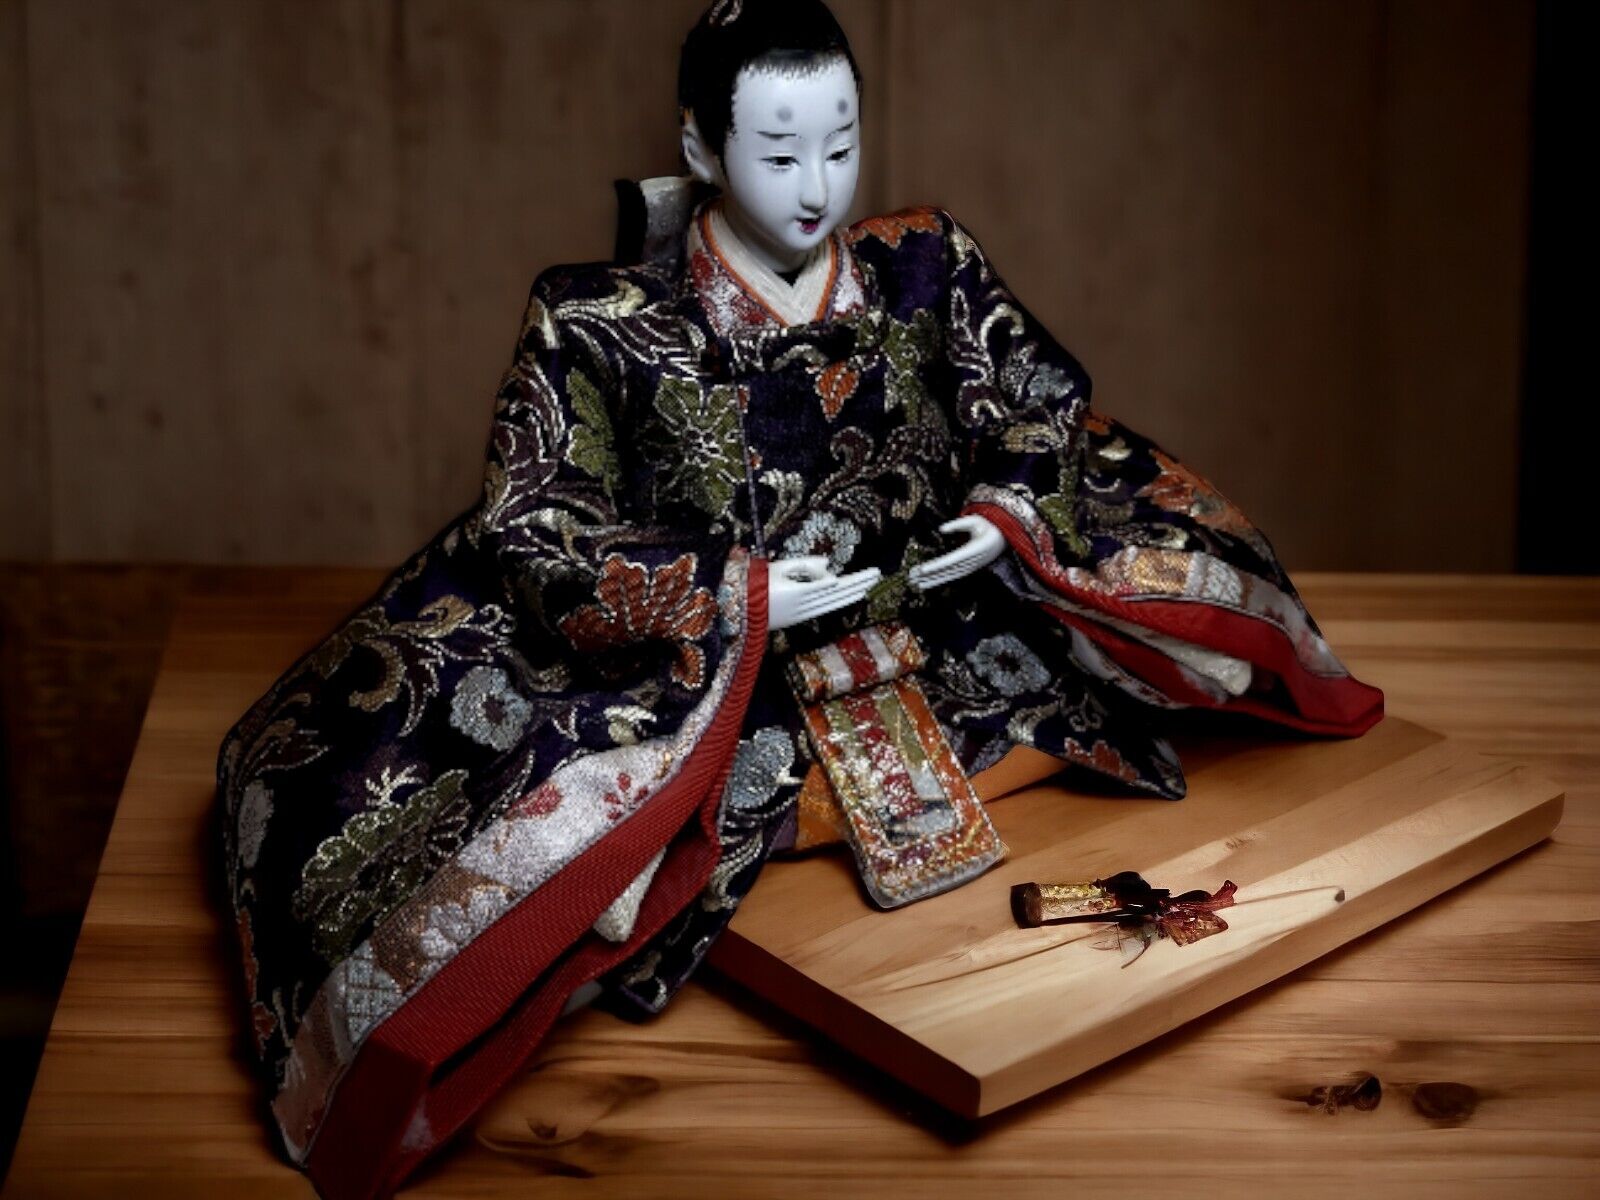 Antique Meiji Era Japanese Taisho Ningyu Samurai Doll